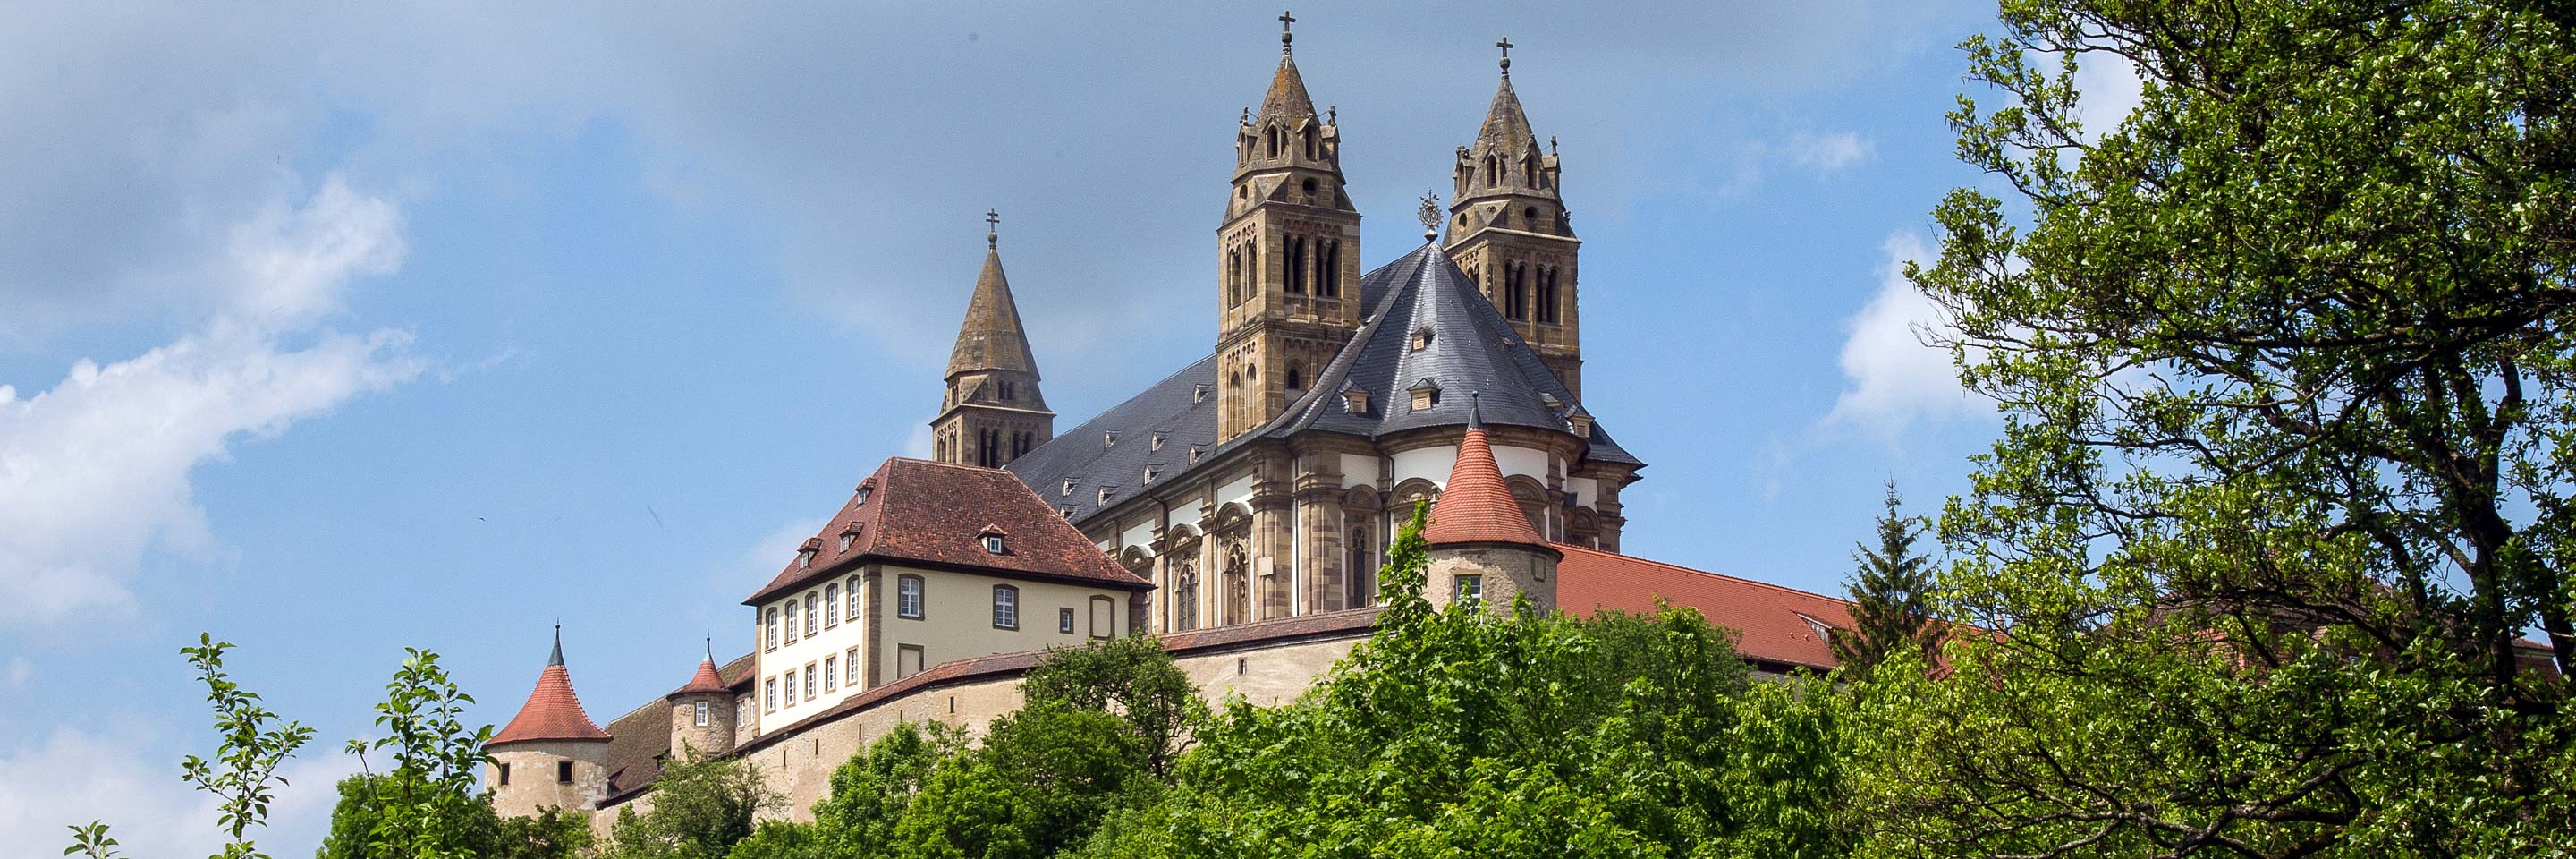 Foto der Comburg, ehemaliges Kloster im Teilort Steinbach, Schwäbisch Hall